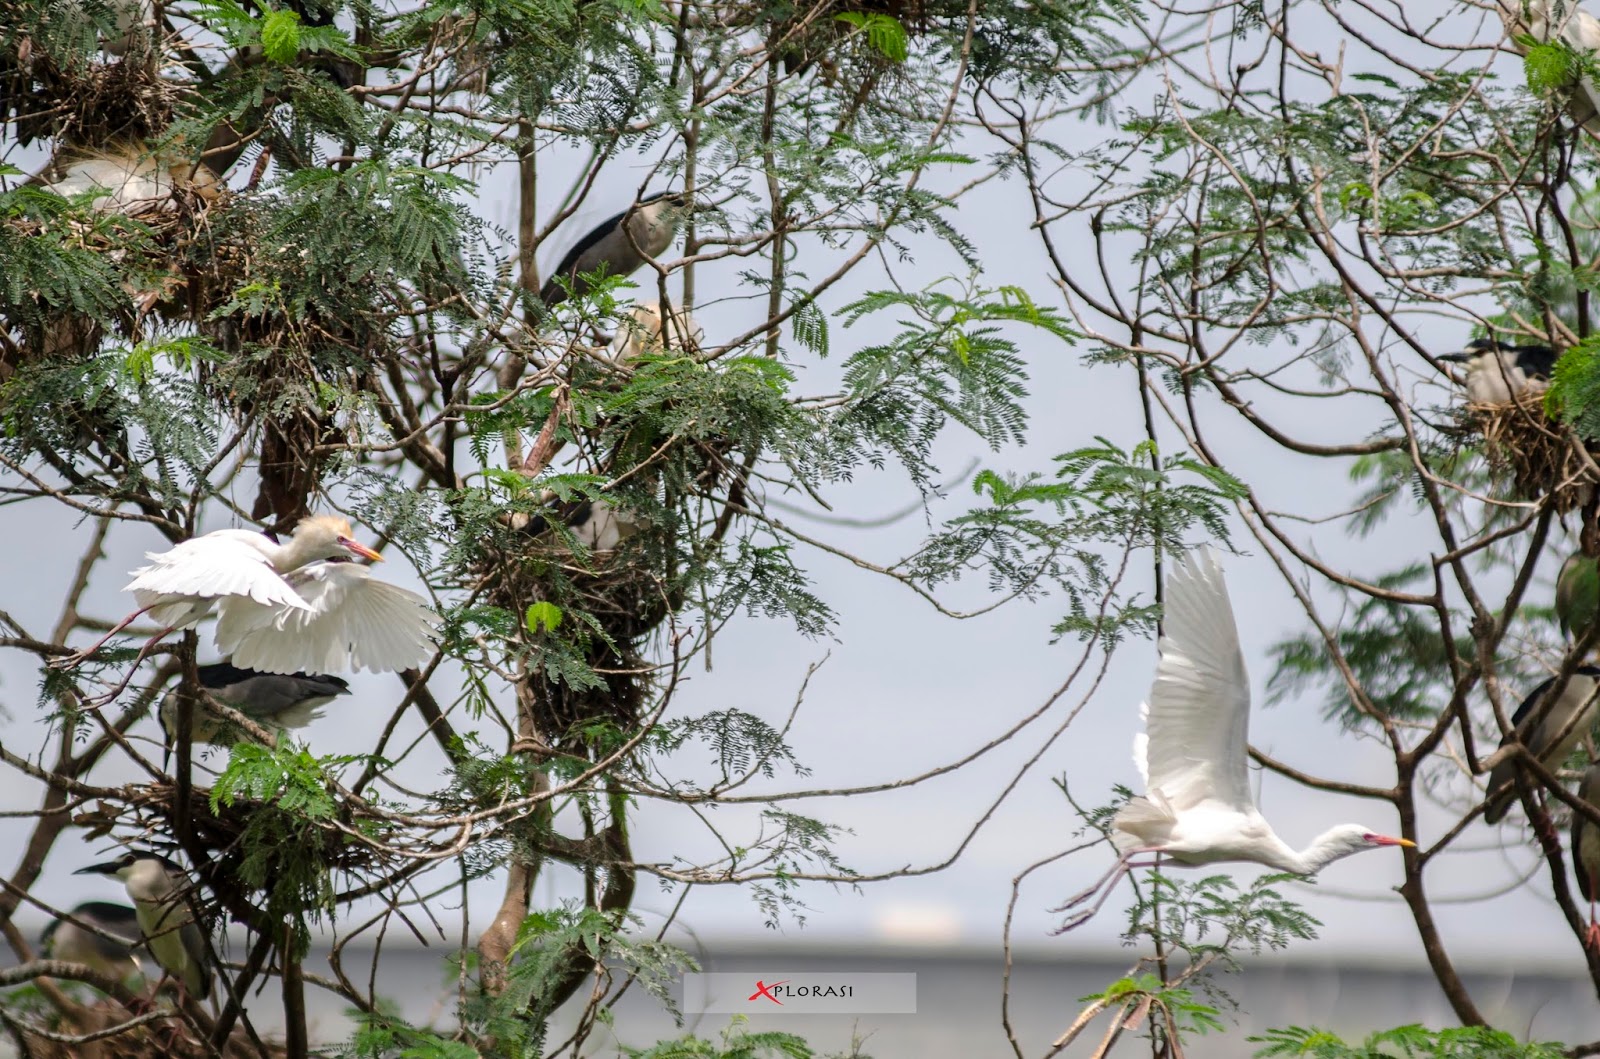 Xplorasi Habitat Burung Sebagai Wisata Alam Bebas Di Kota Medan